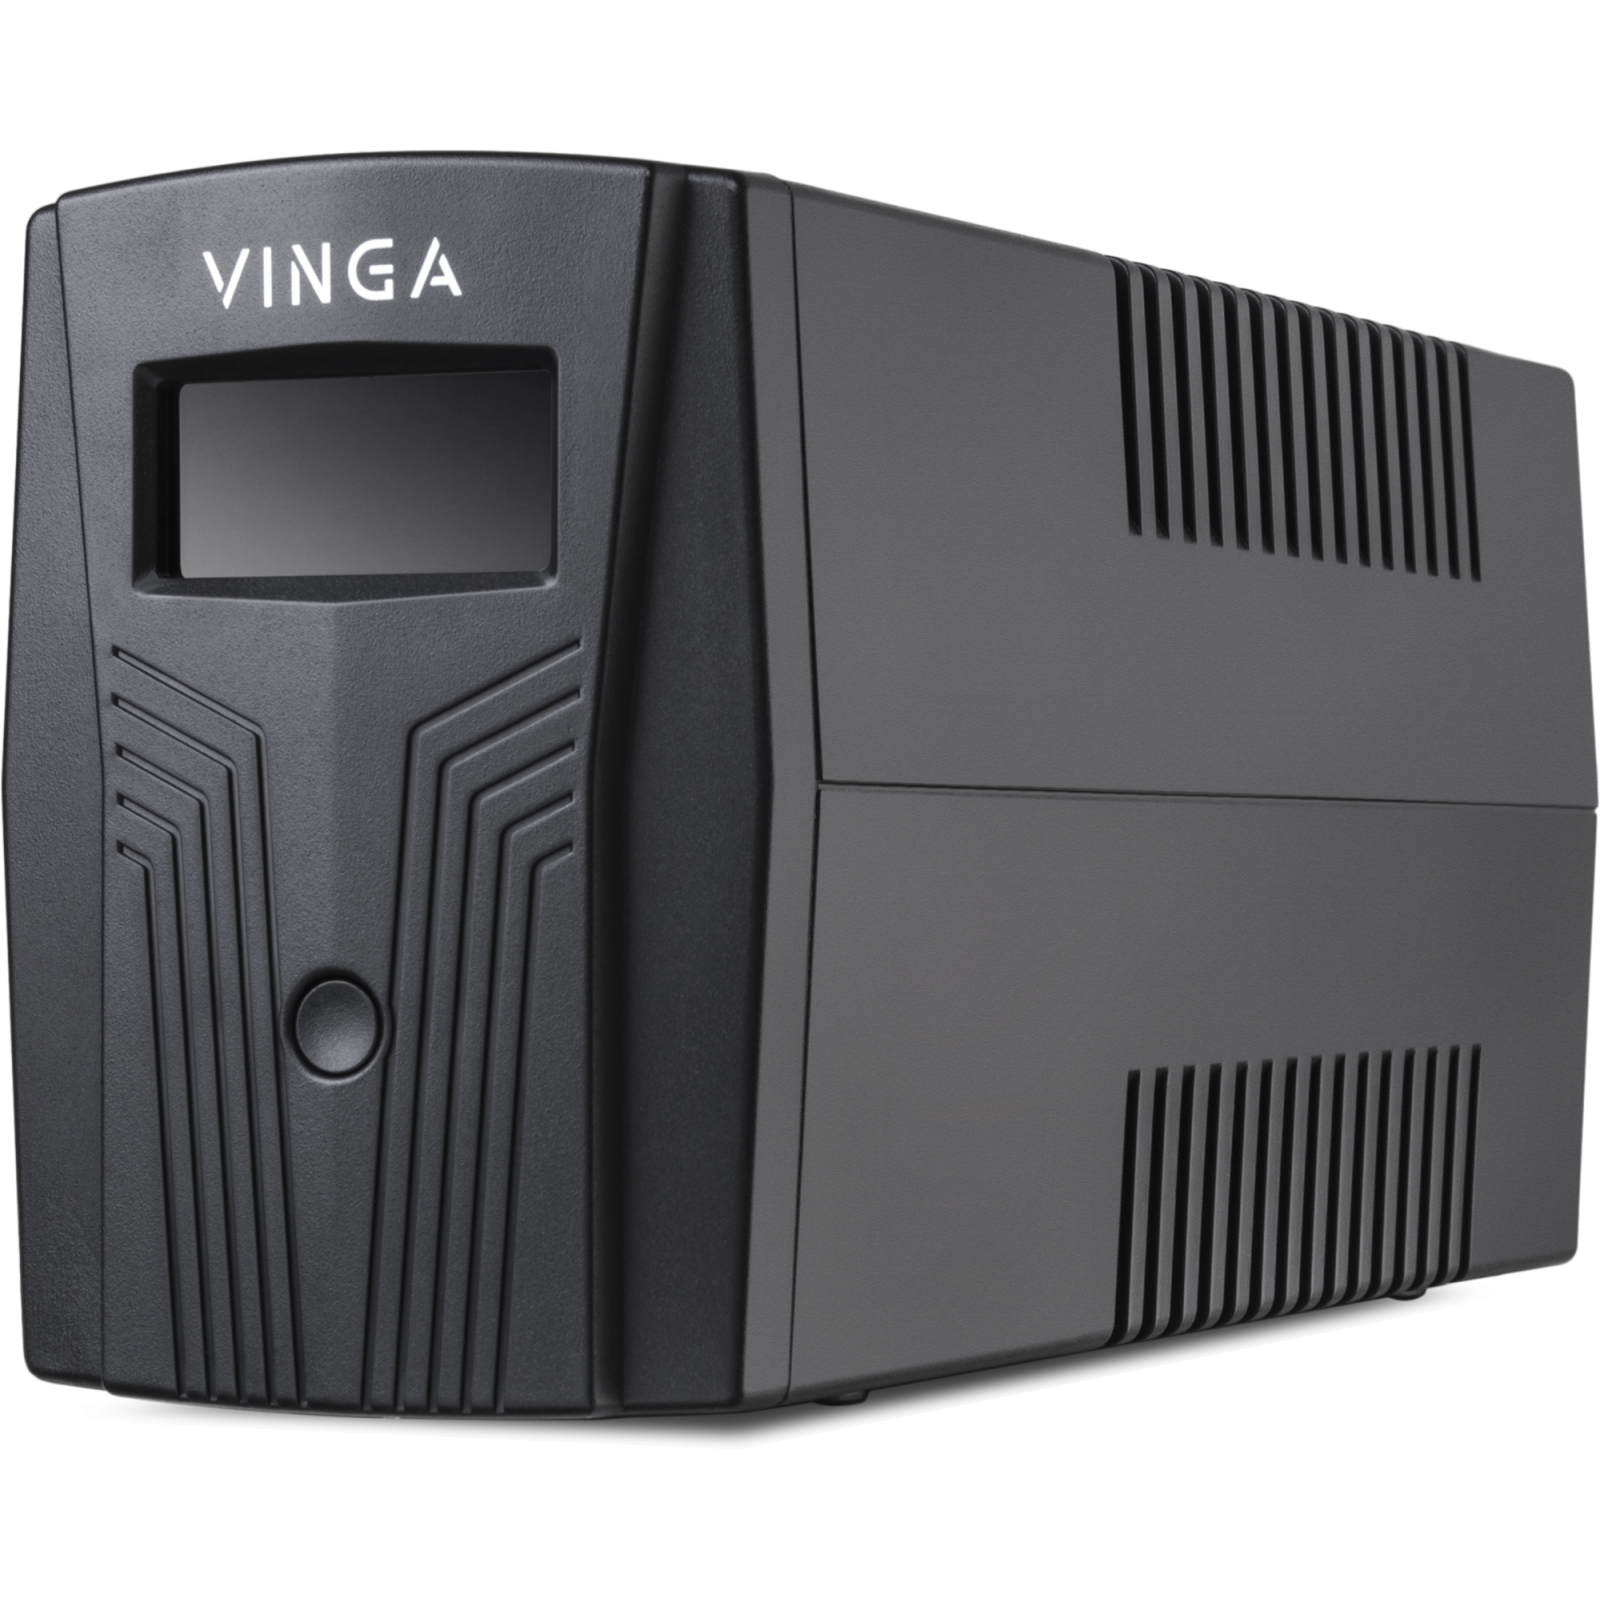 Источник бесперебойного питания Vinga LCD 1500VA plastic case (VPC-1500P) изображение 6